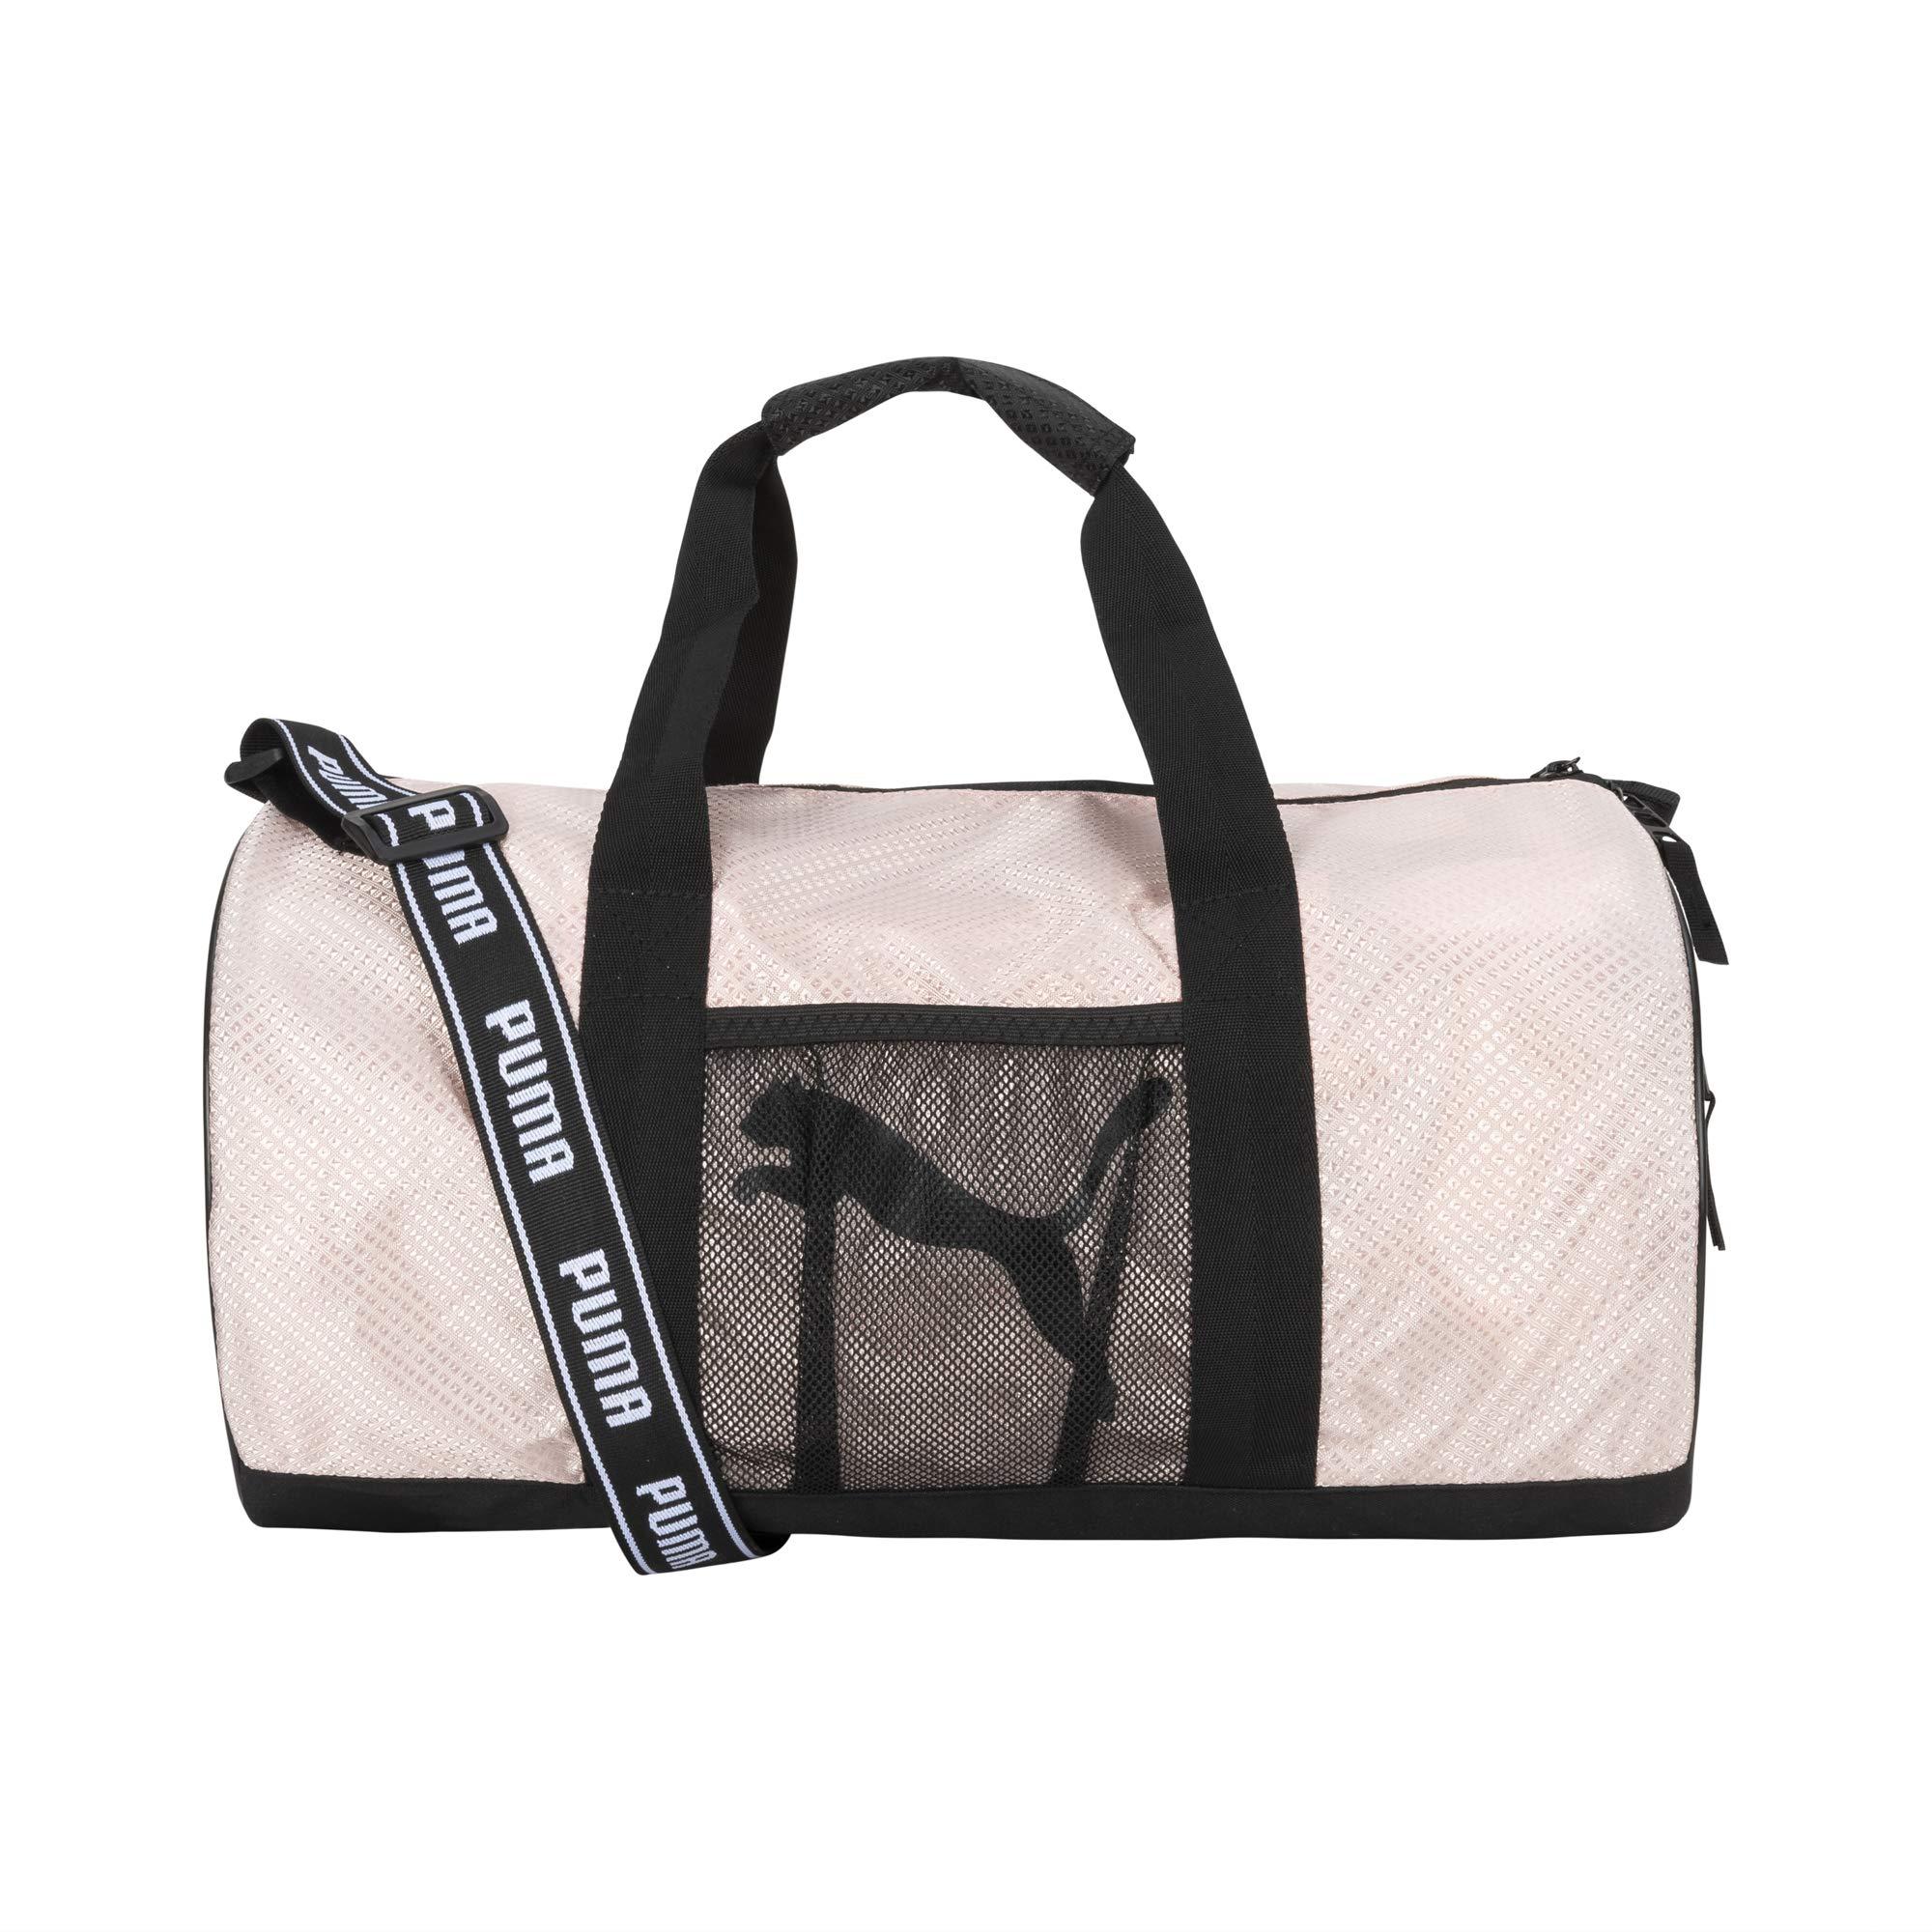 PUMA Jolt Duffel Bag in Pink/Black (Black) | Lyst